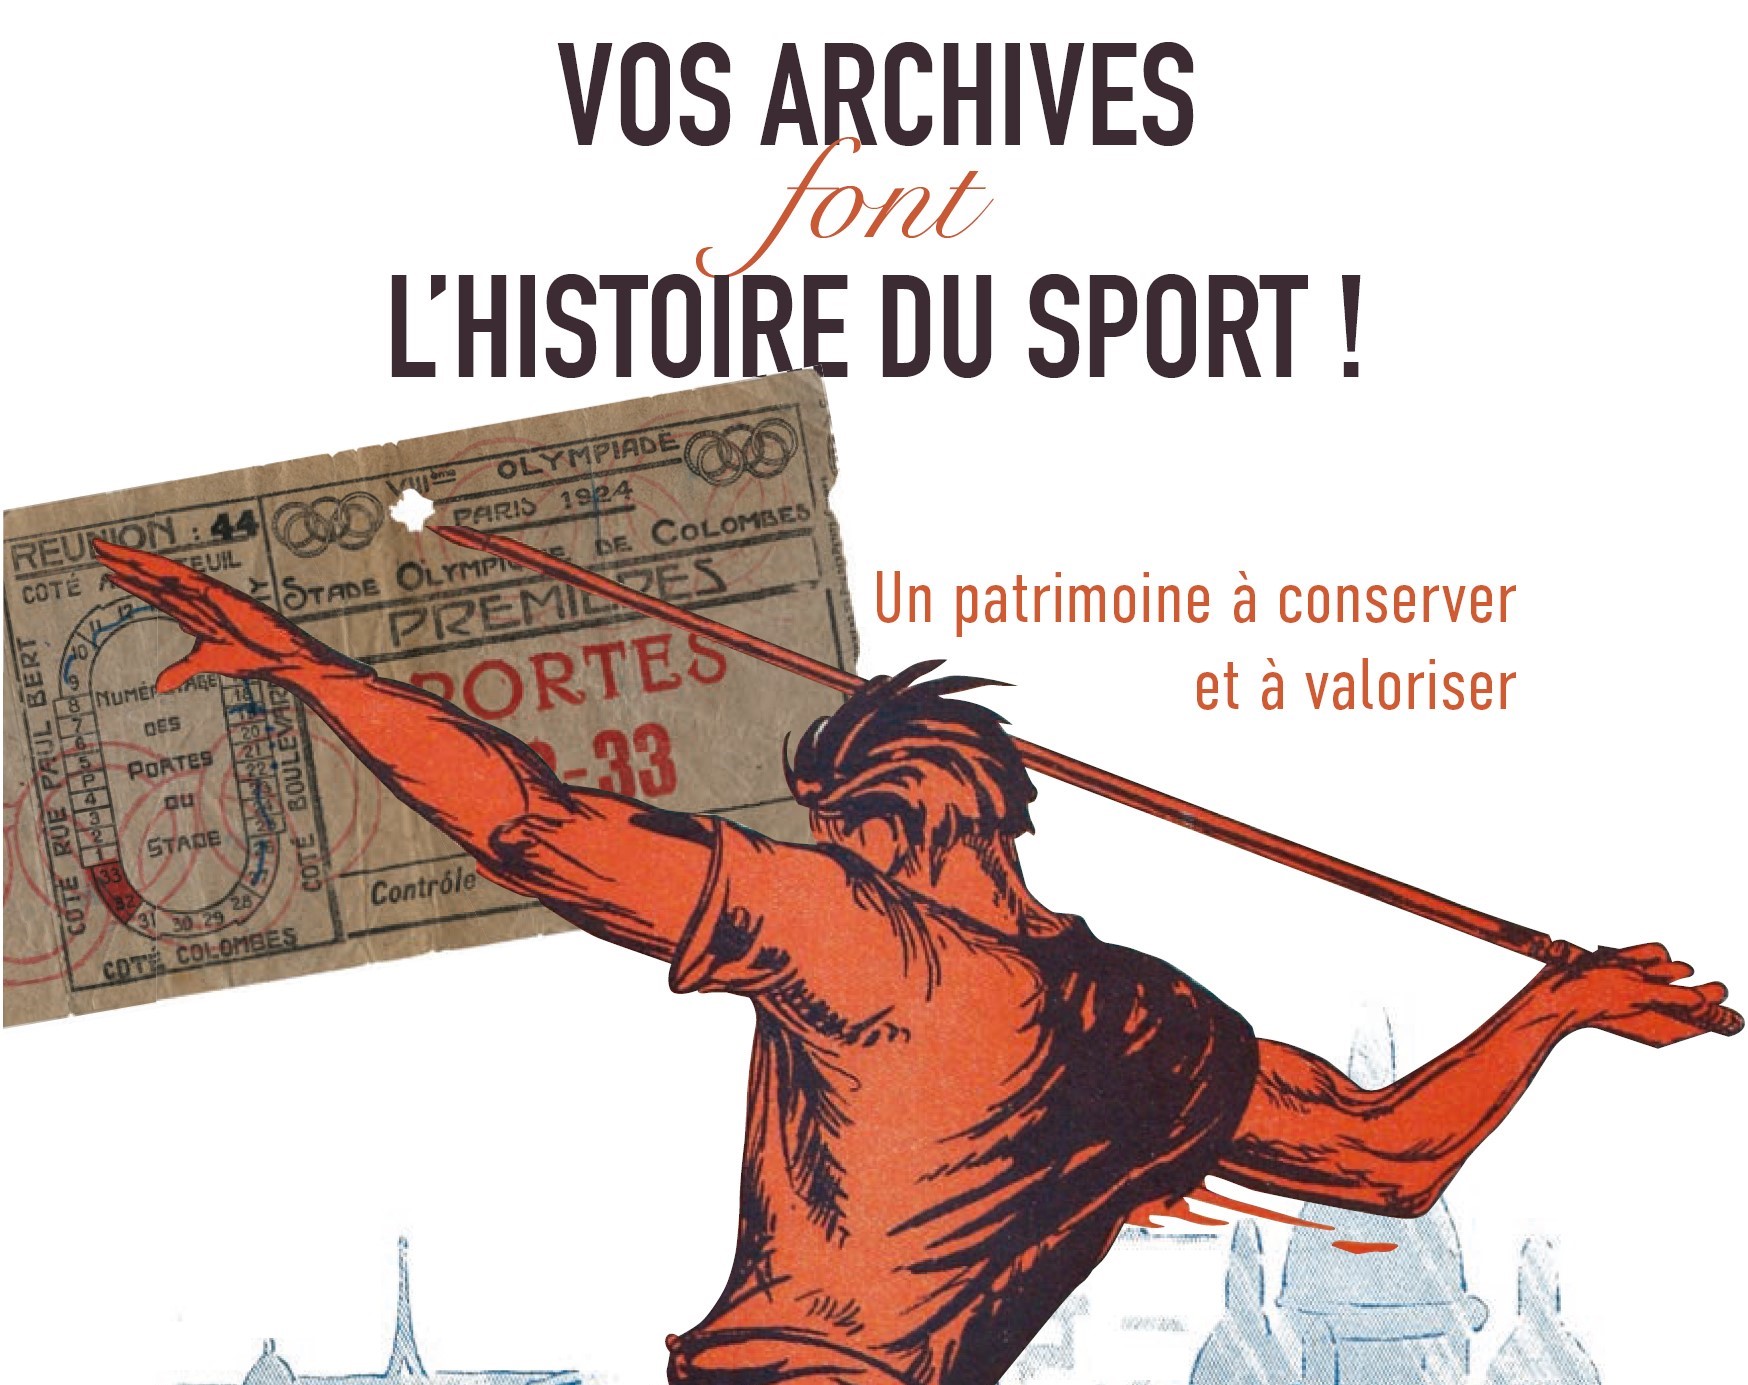 Vos archives font l’histoire du sport : à vos marques, prêt ? Archivez ! 